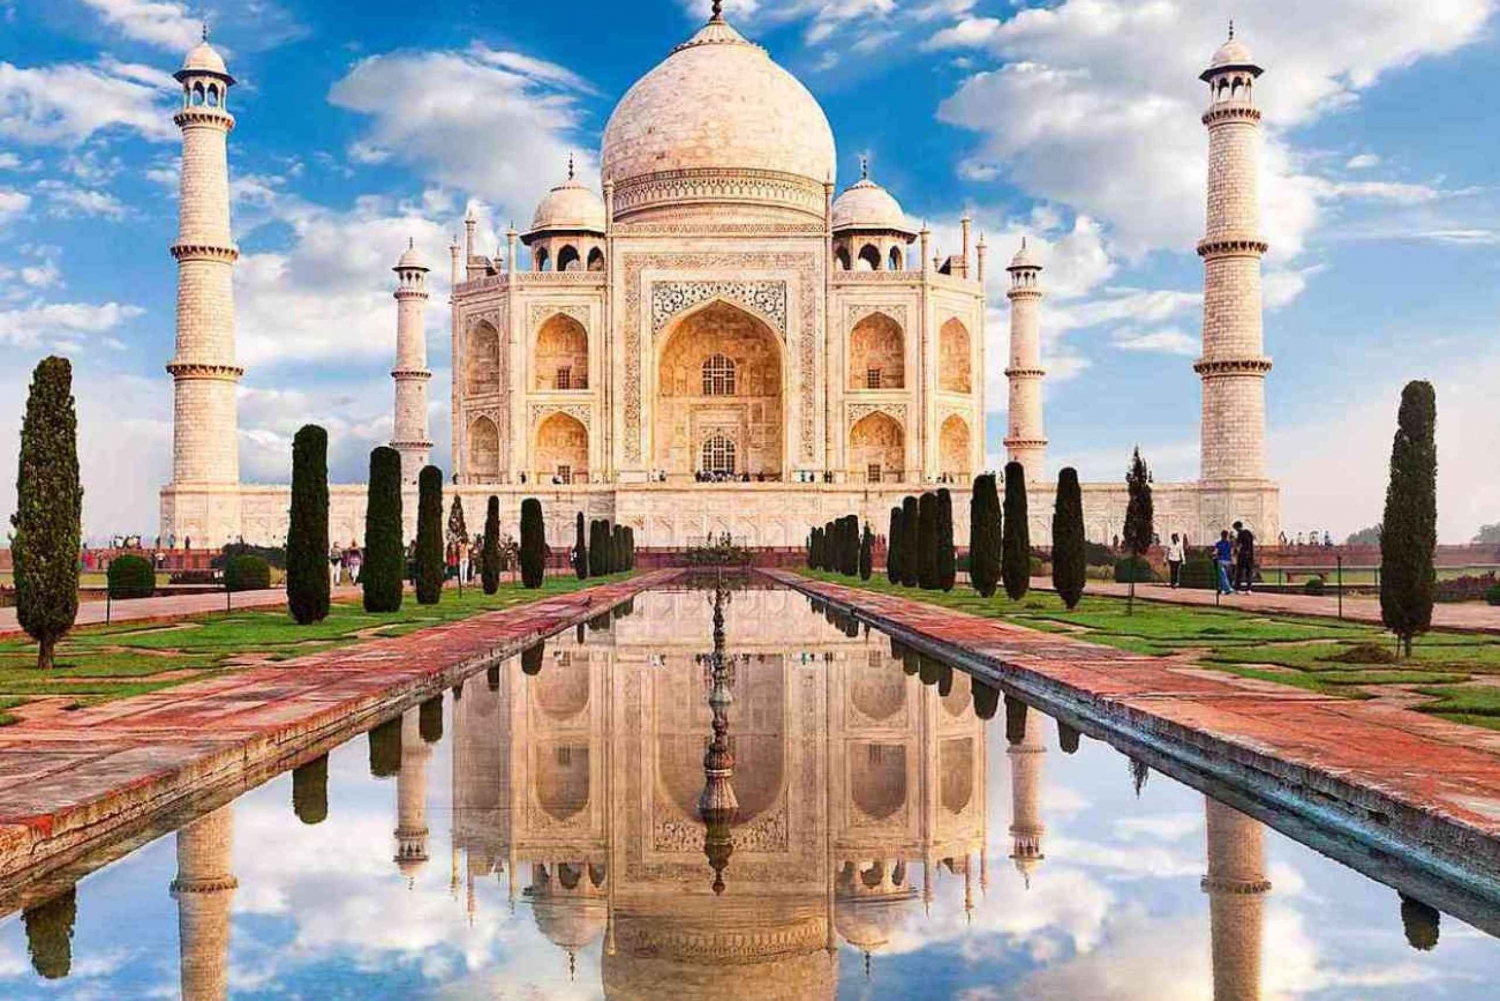 Explorez Agra depuis Delhi et déposez-vous à Jaipur avec transport